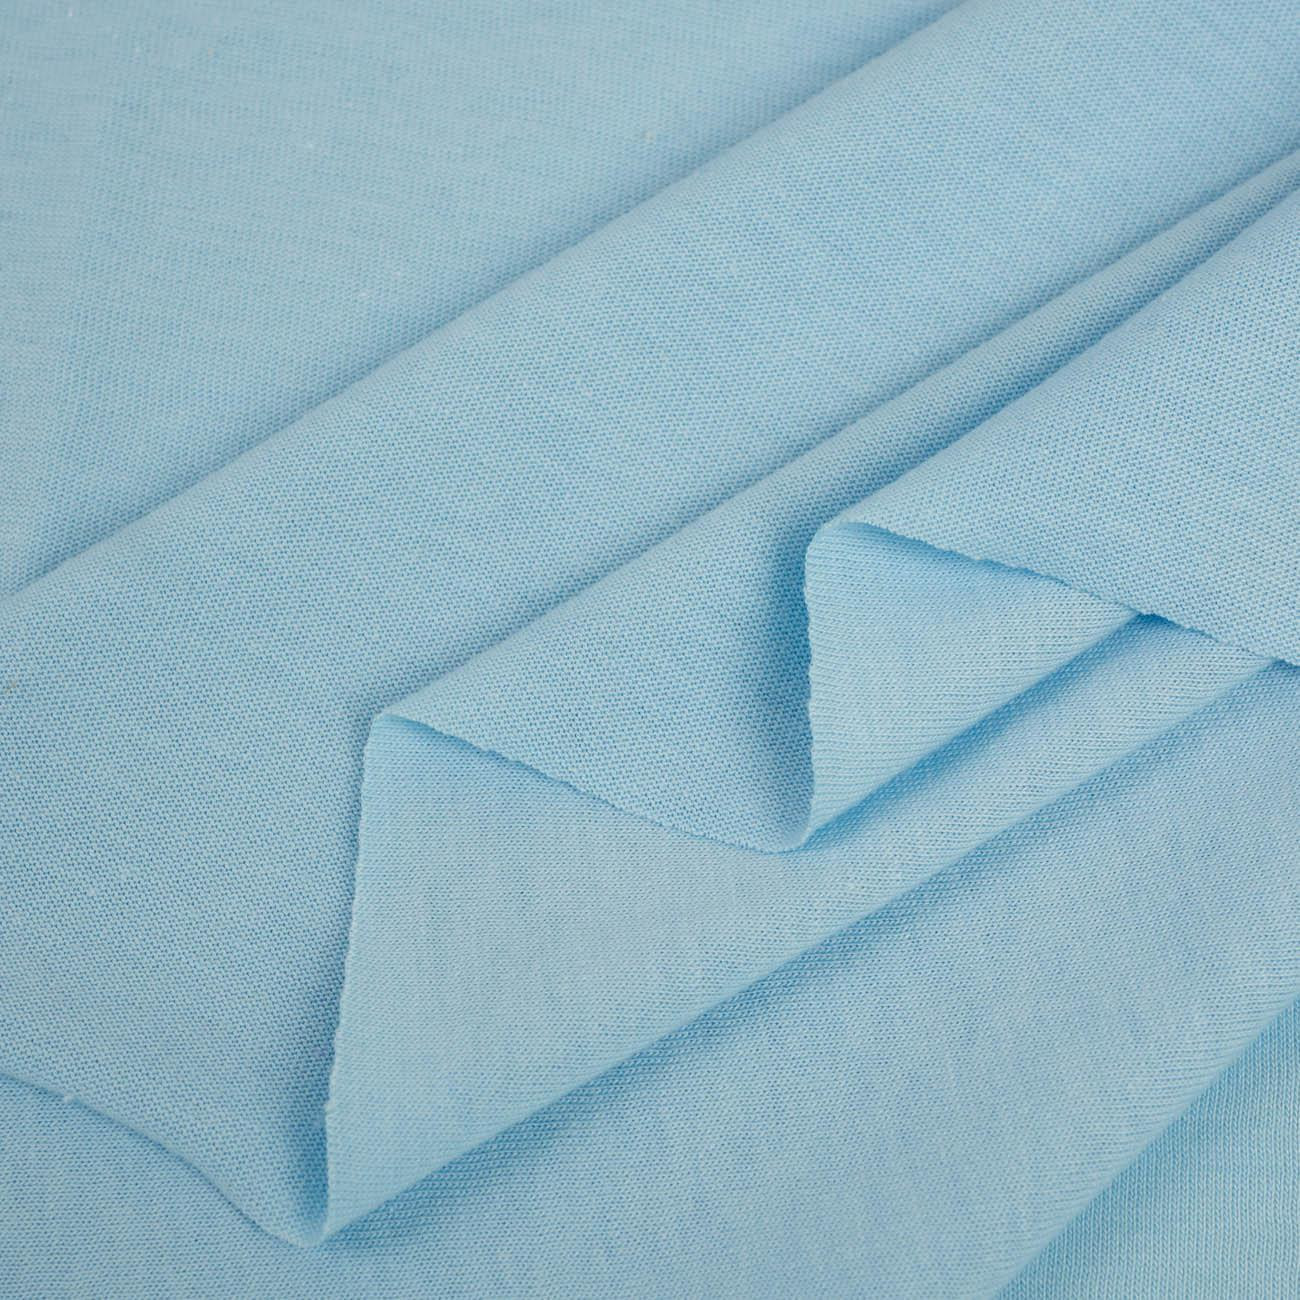 D-75 LIGHT BLUE - T-shirt knit fabric 100% cotton T140